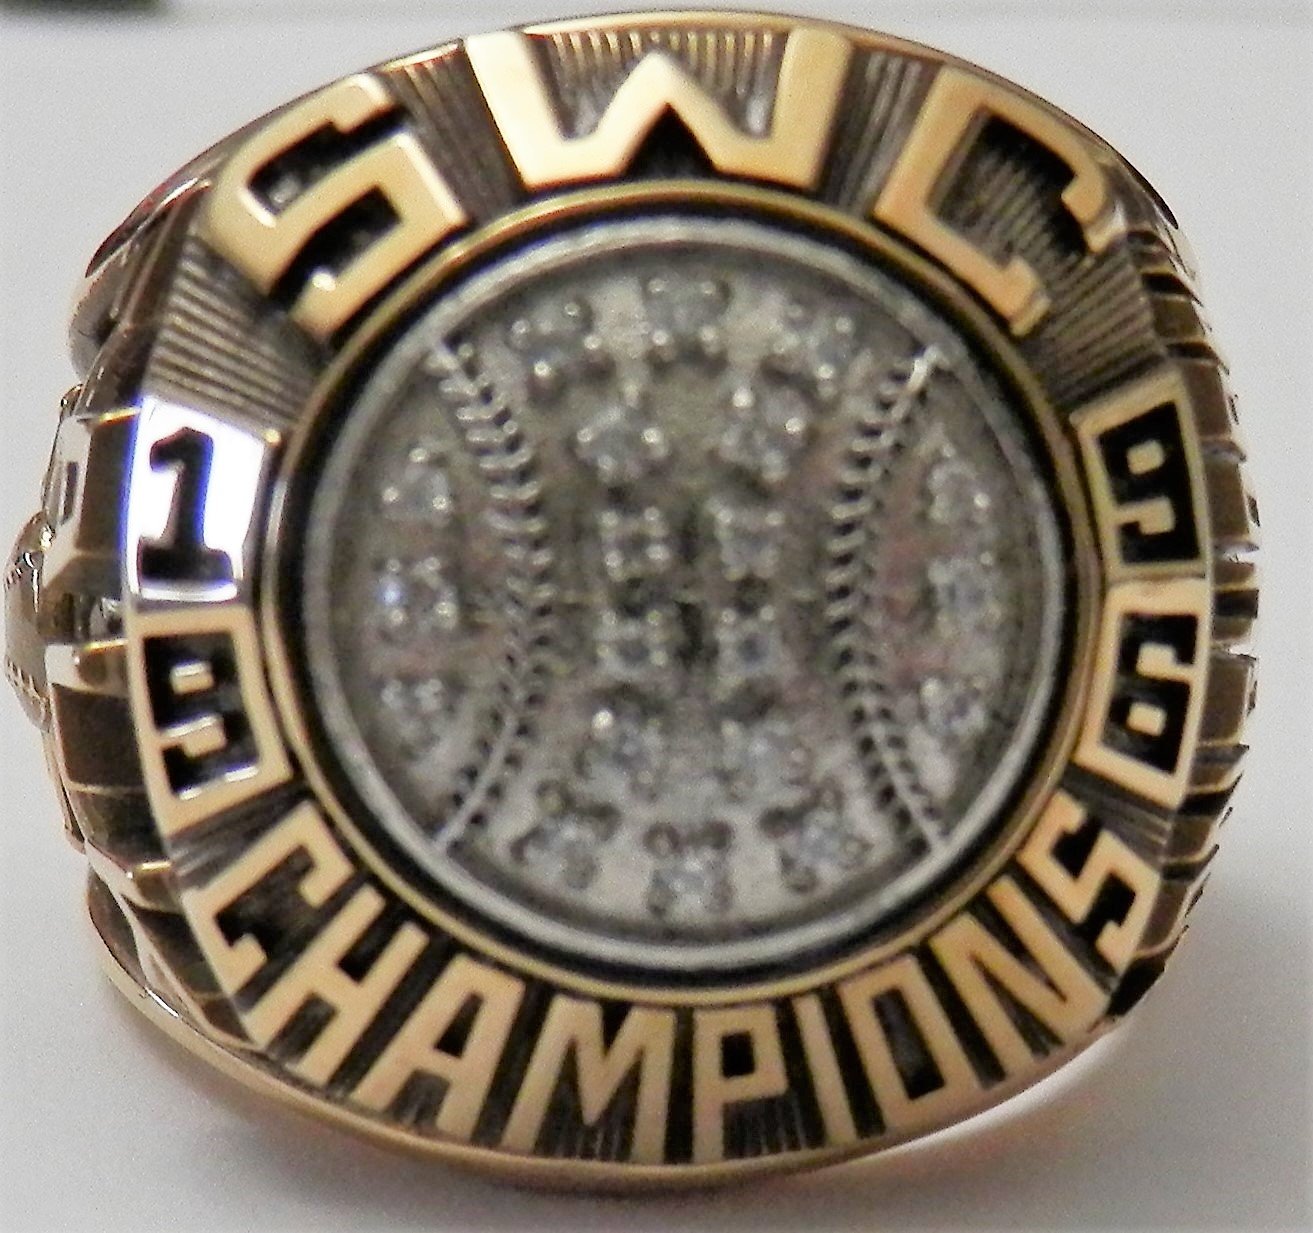 1996 SWC champs